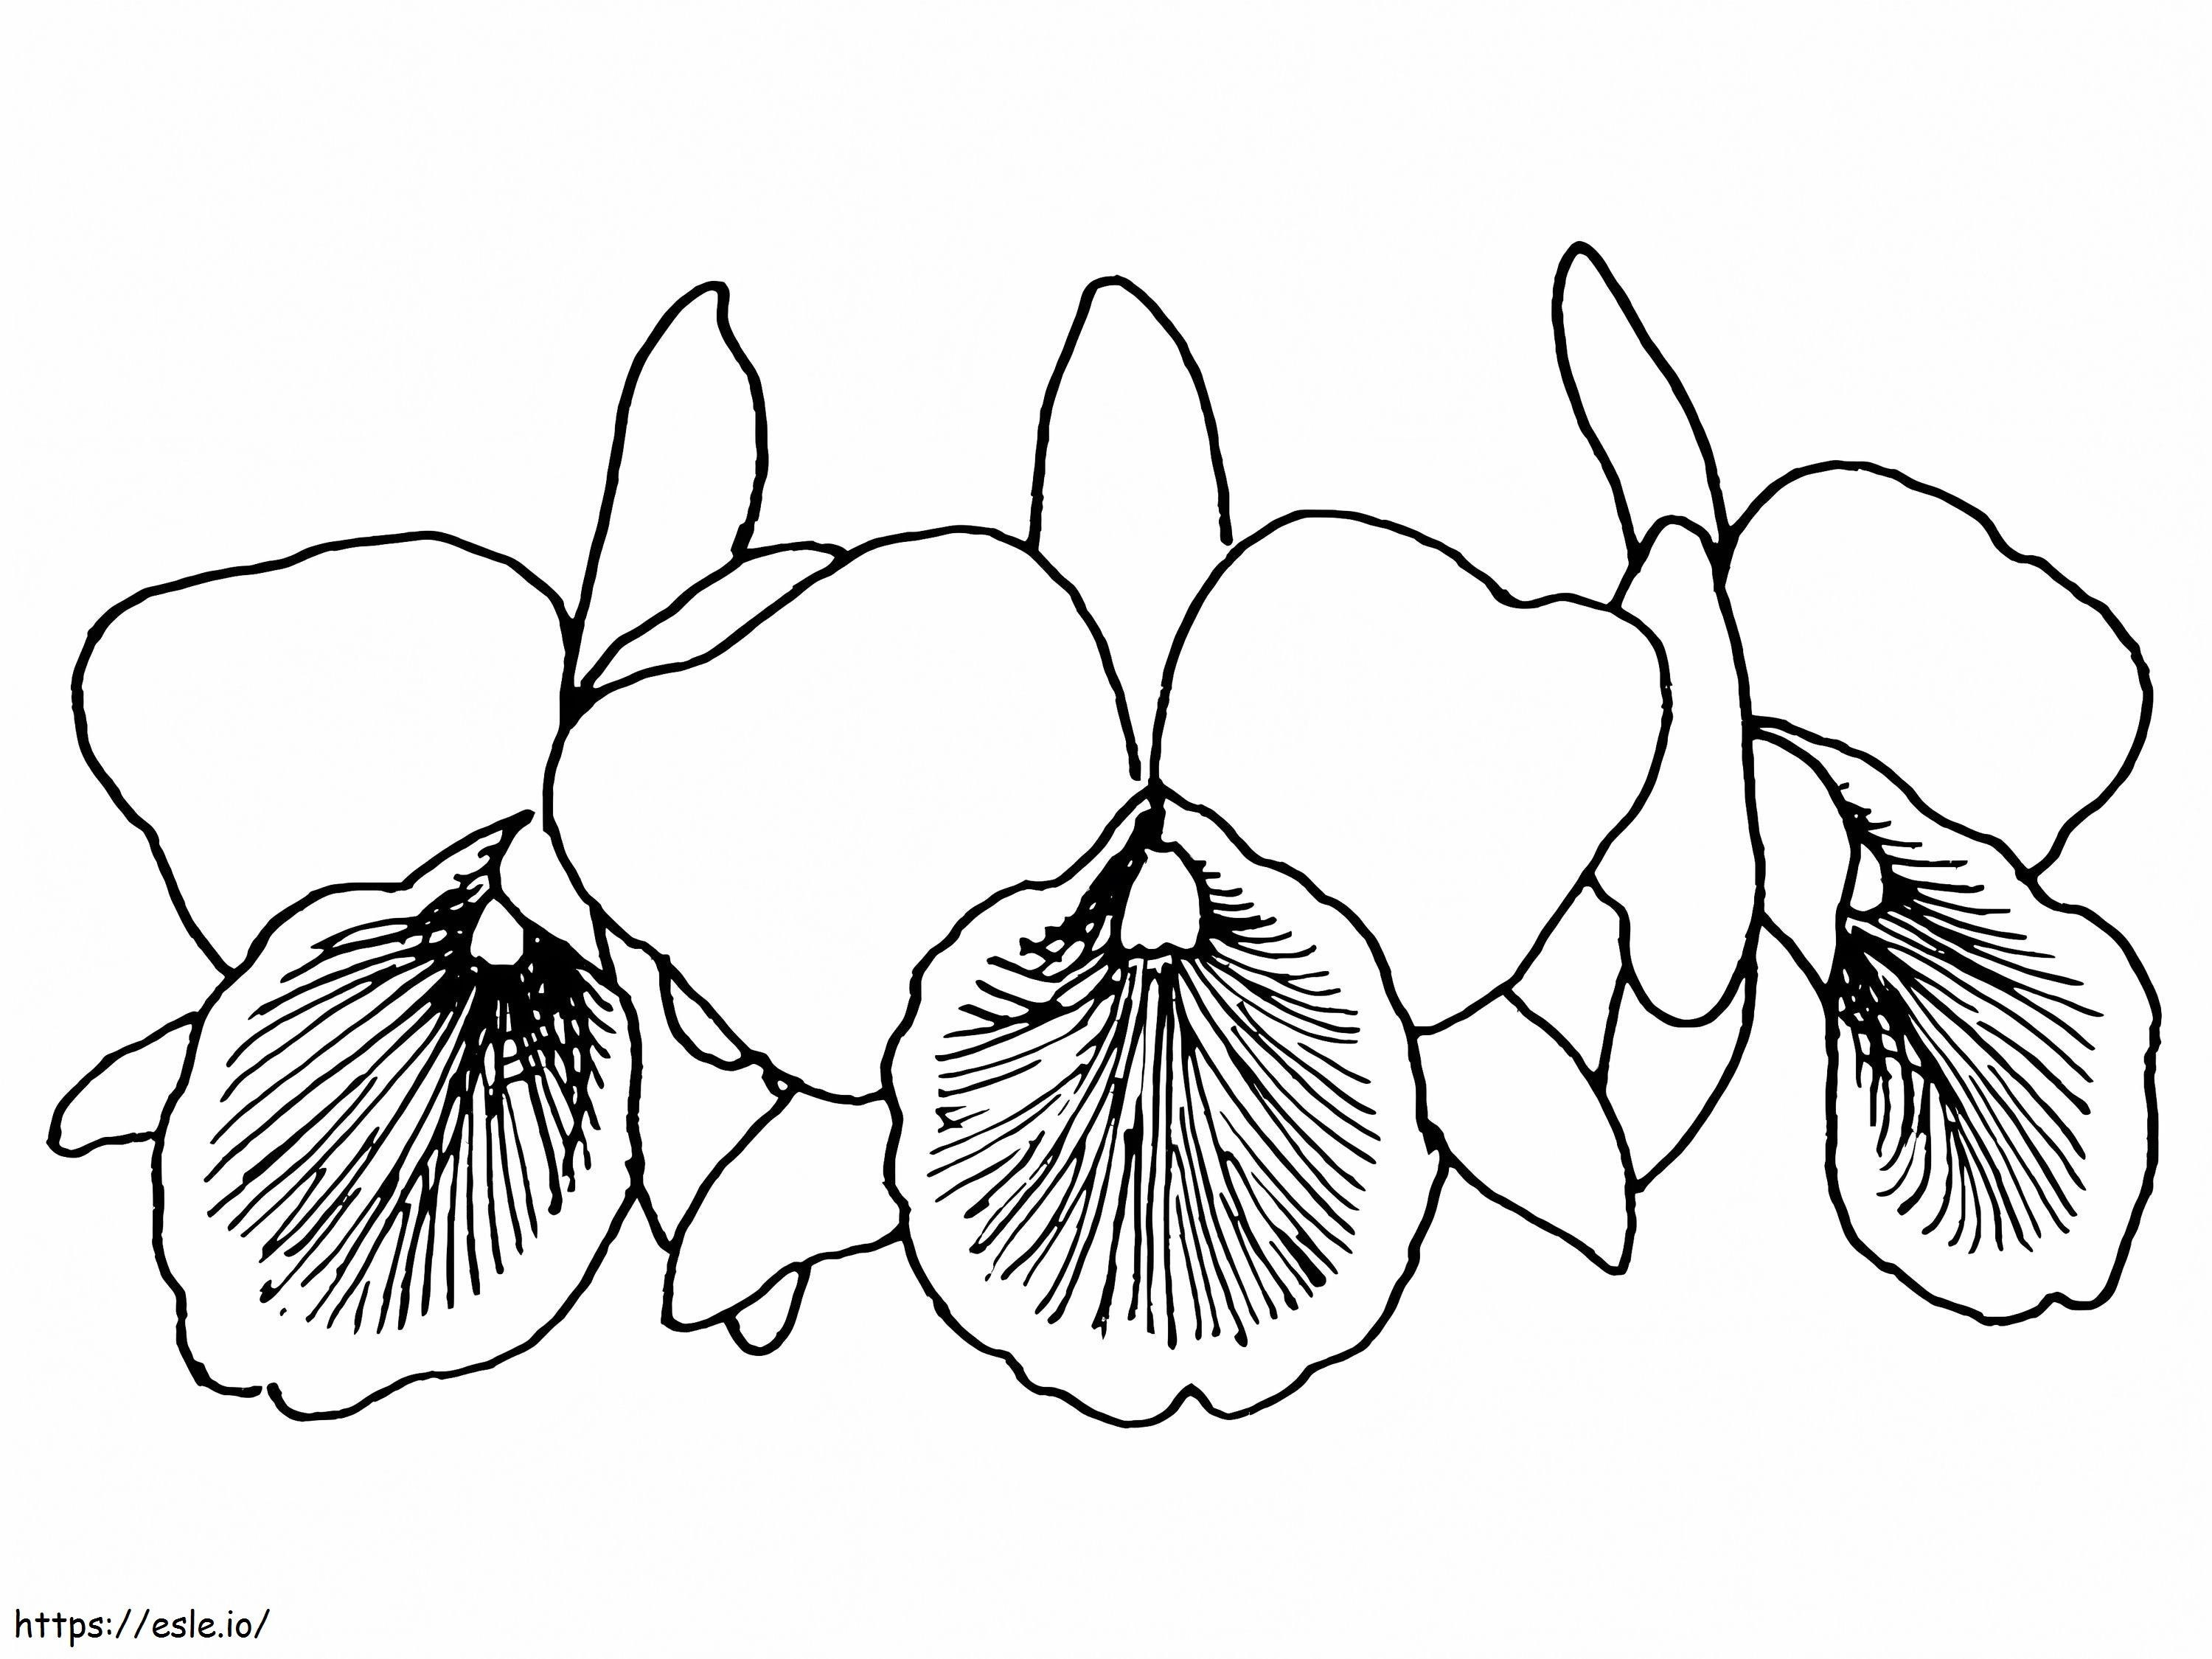 Drei Orchideen ausmalbilder